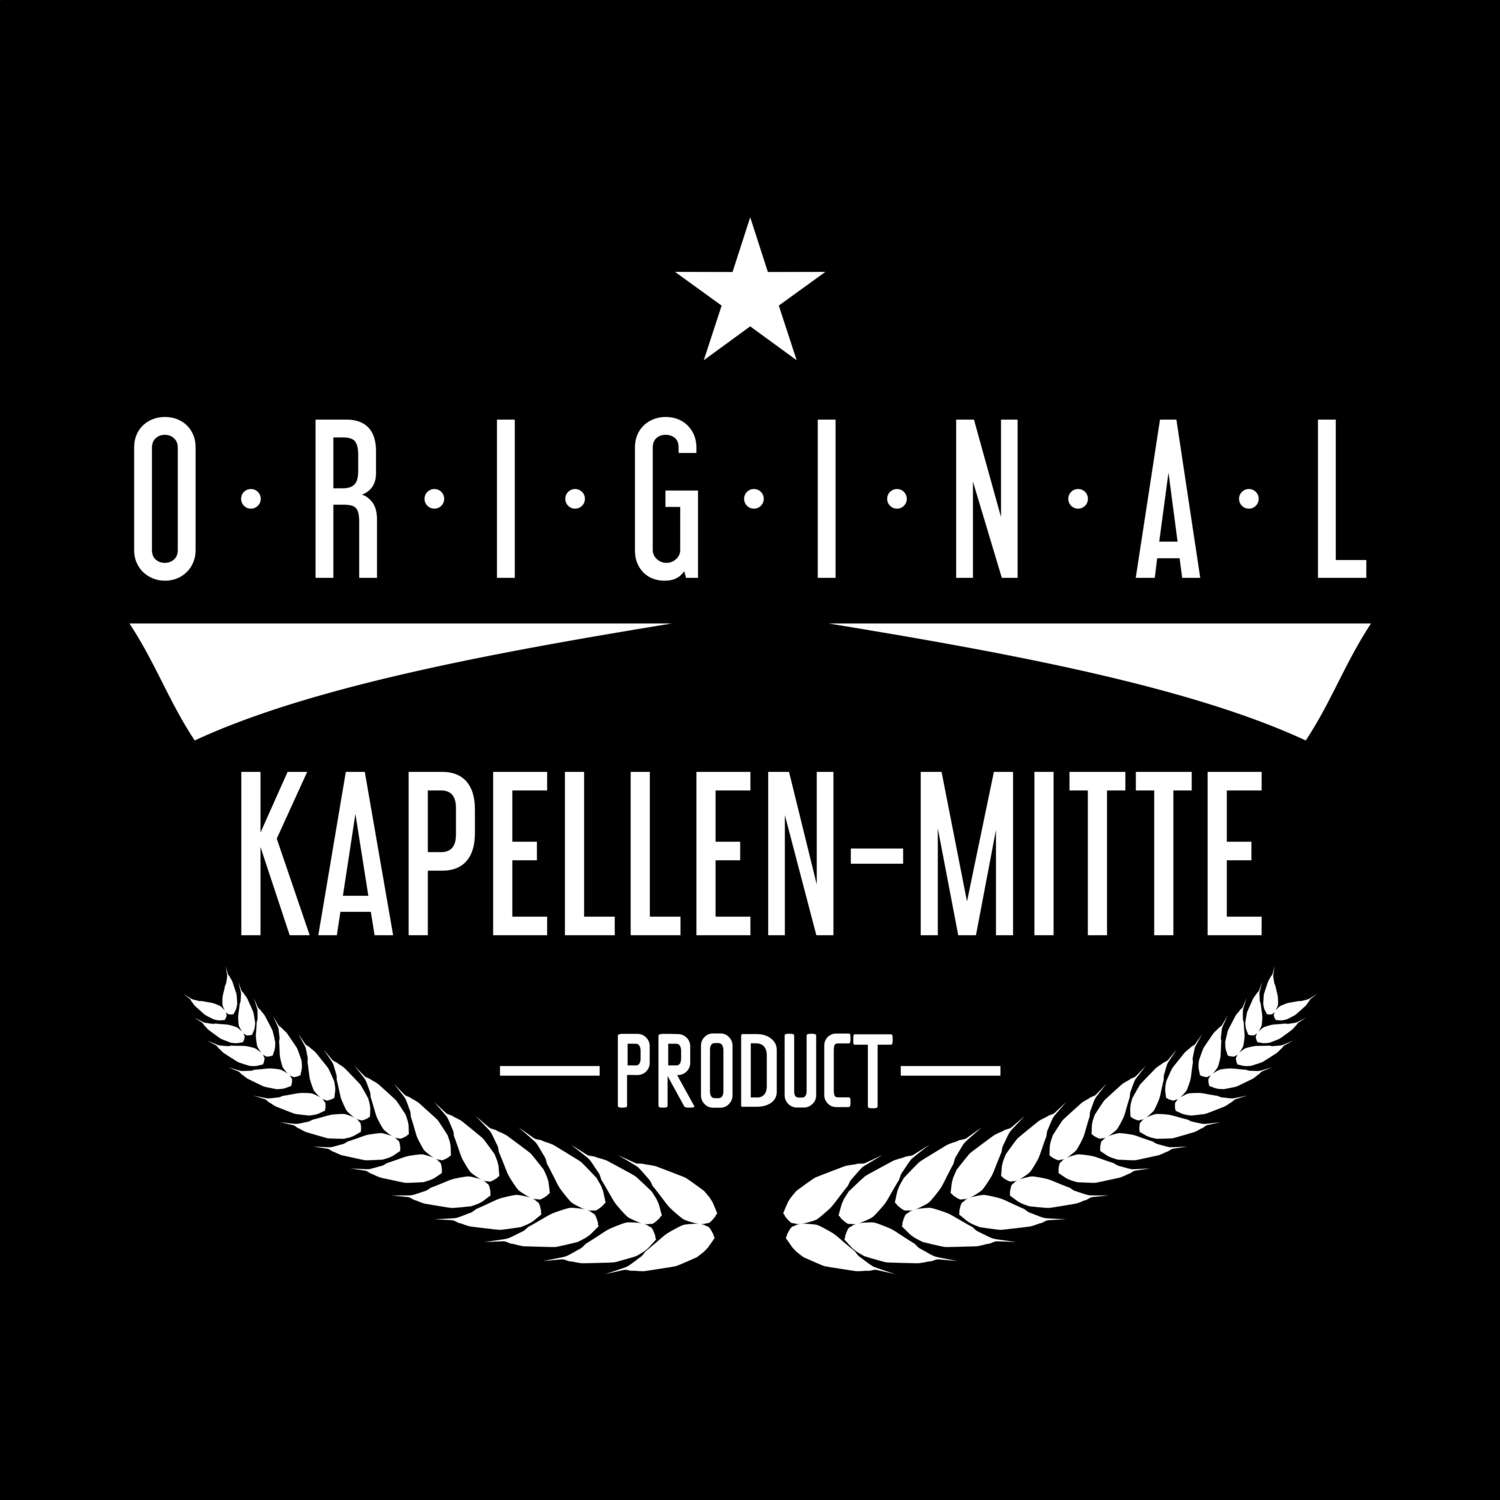 Kapellen-Mitte T-Shirt »Original Product«